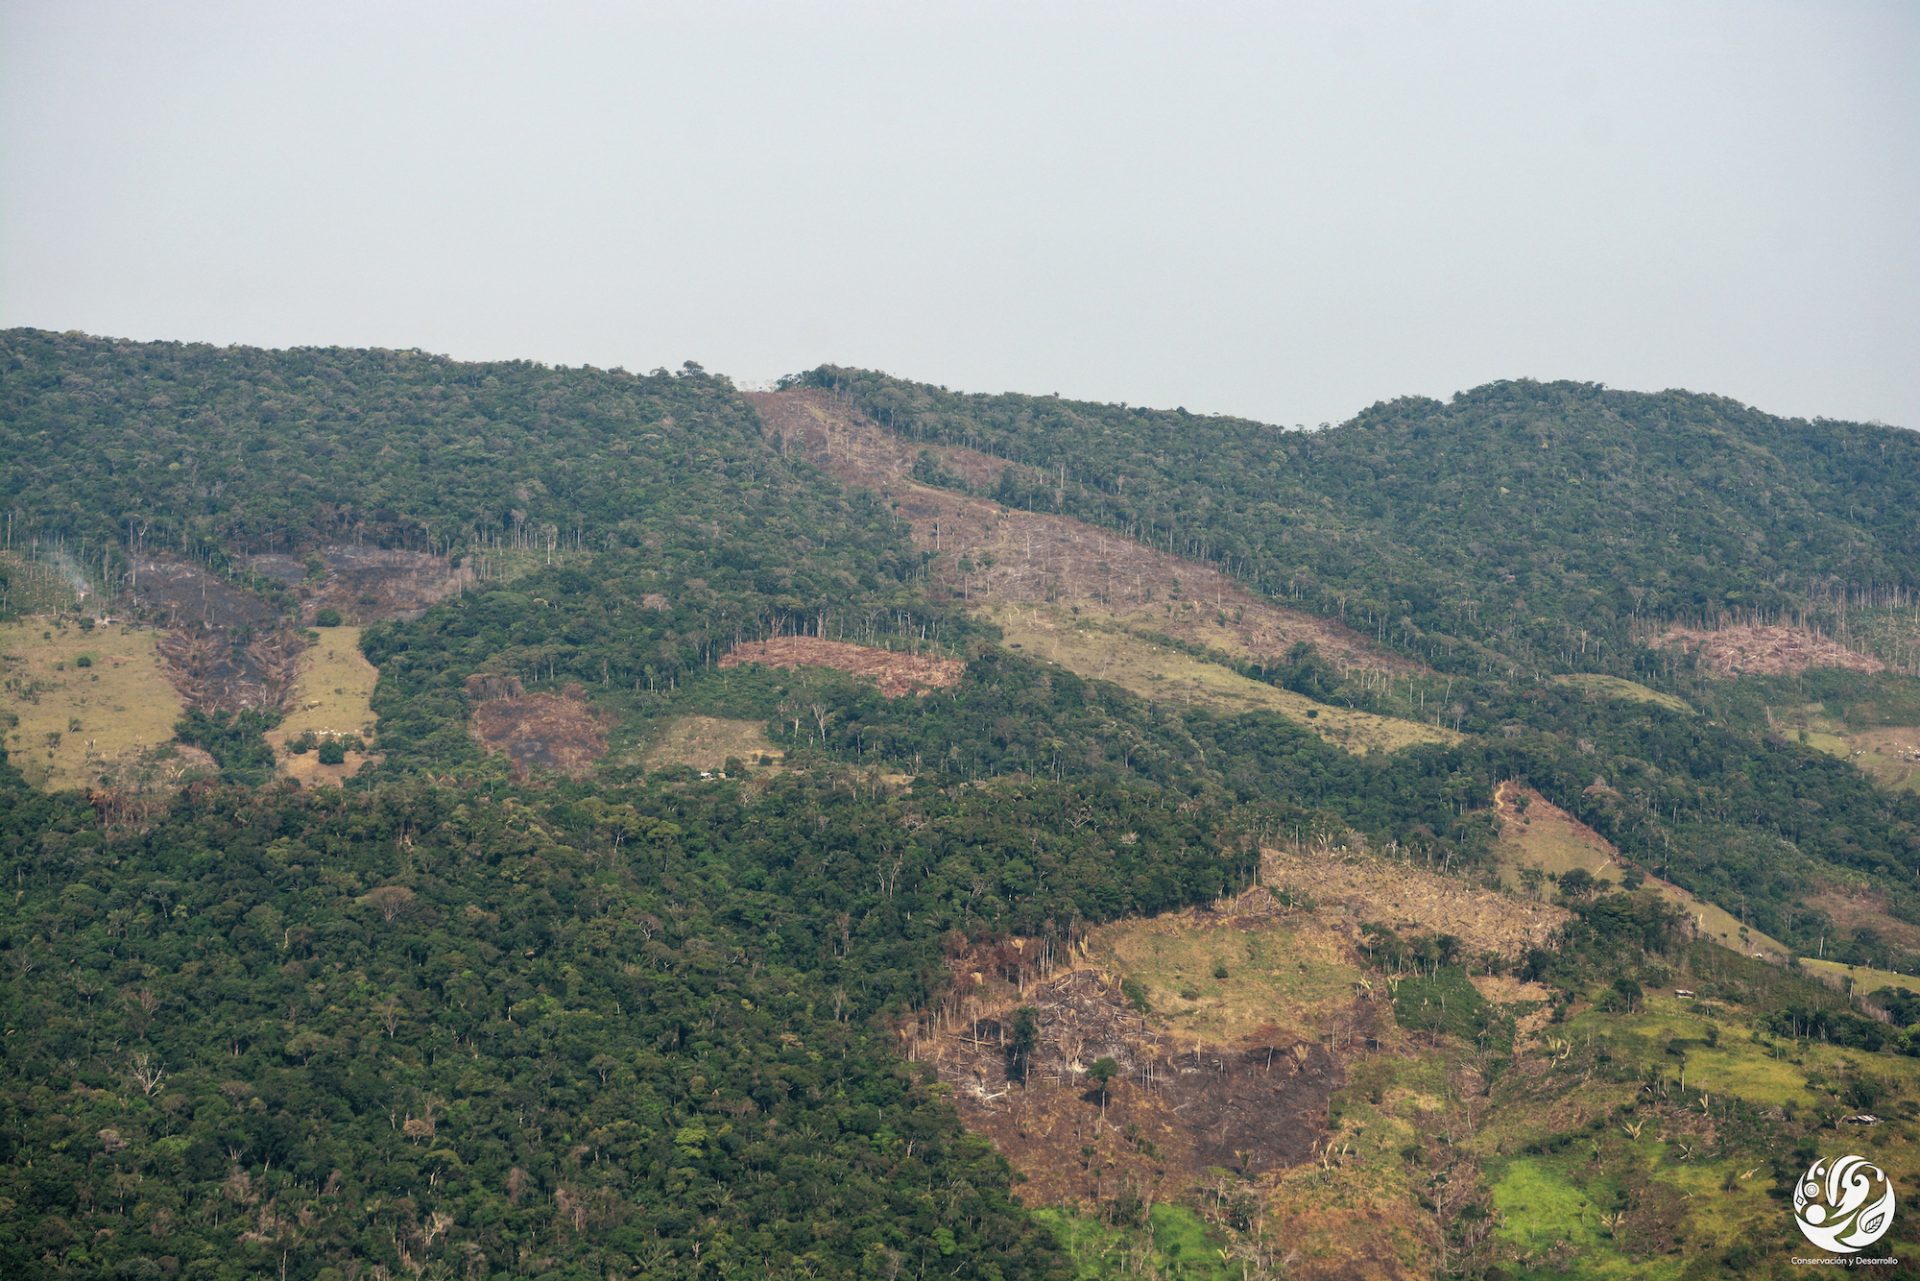 Deforestación parque Tinigua. Deforestación Amazonía norte colombiana. Foto: Fundación para la Conservación y el Desarrollo Sostenible (FCDS).